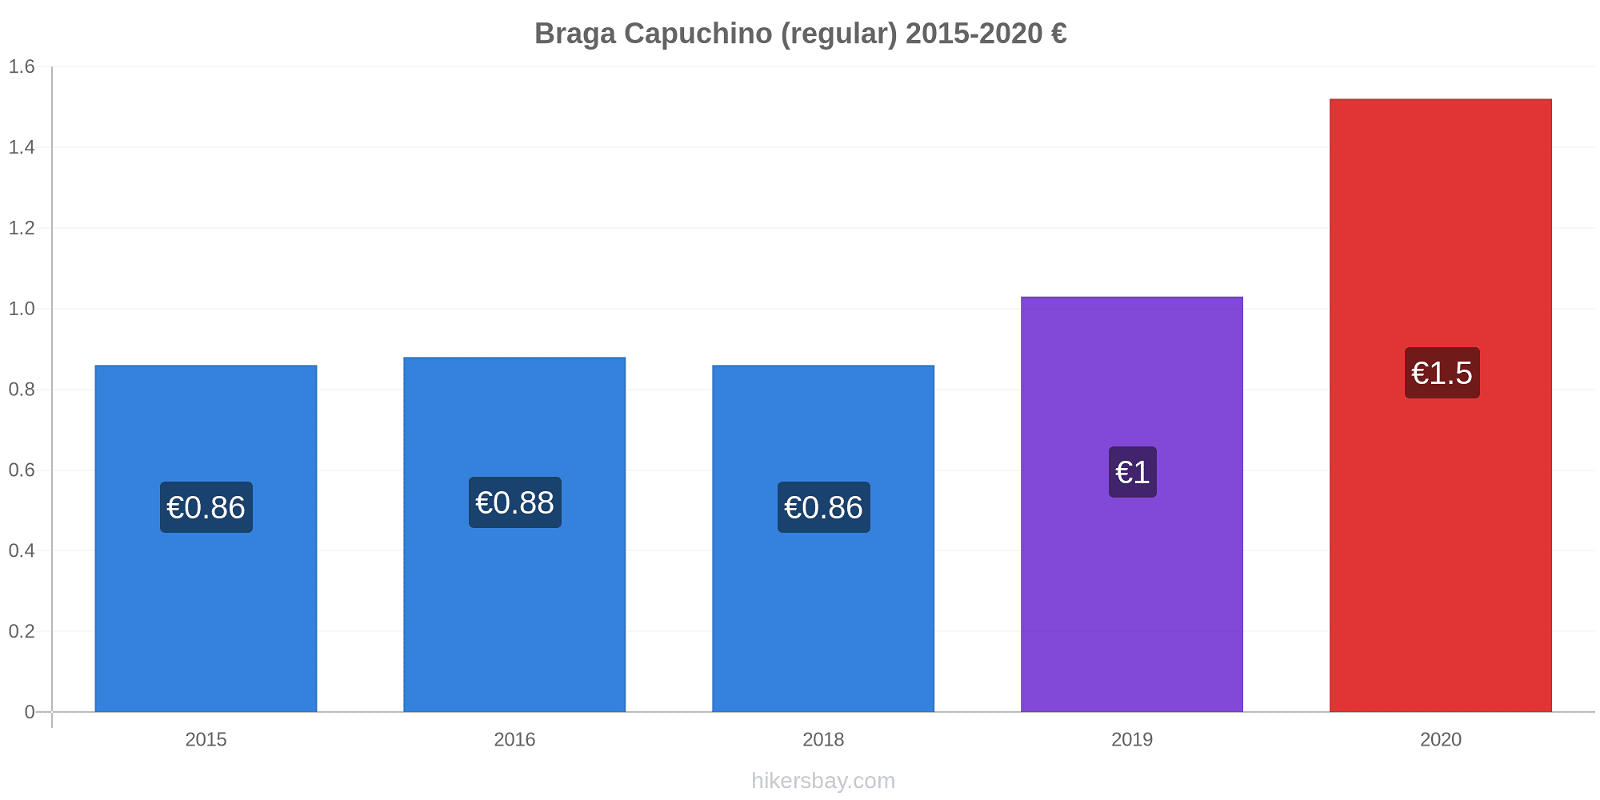 Braga cambios de precios Capuchino (regular) hikersbay.com